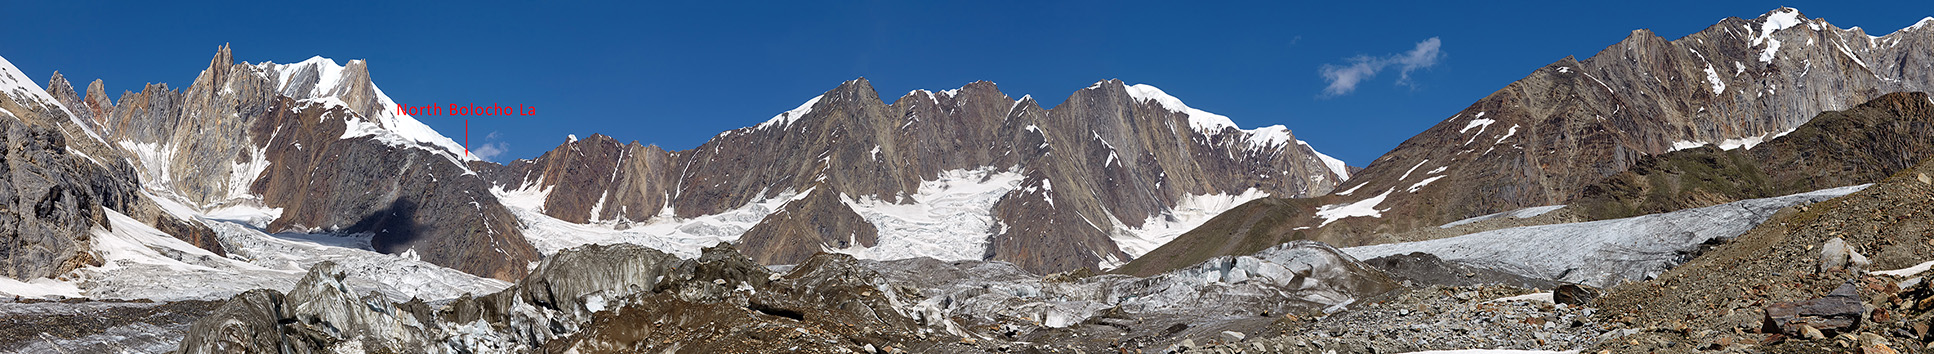 Панорама верховий ледника Kero Lungma с точки выхода с морены назад на ледник